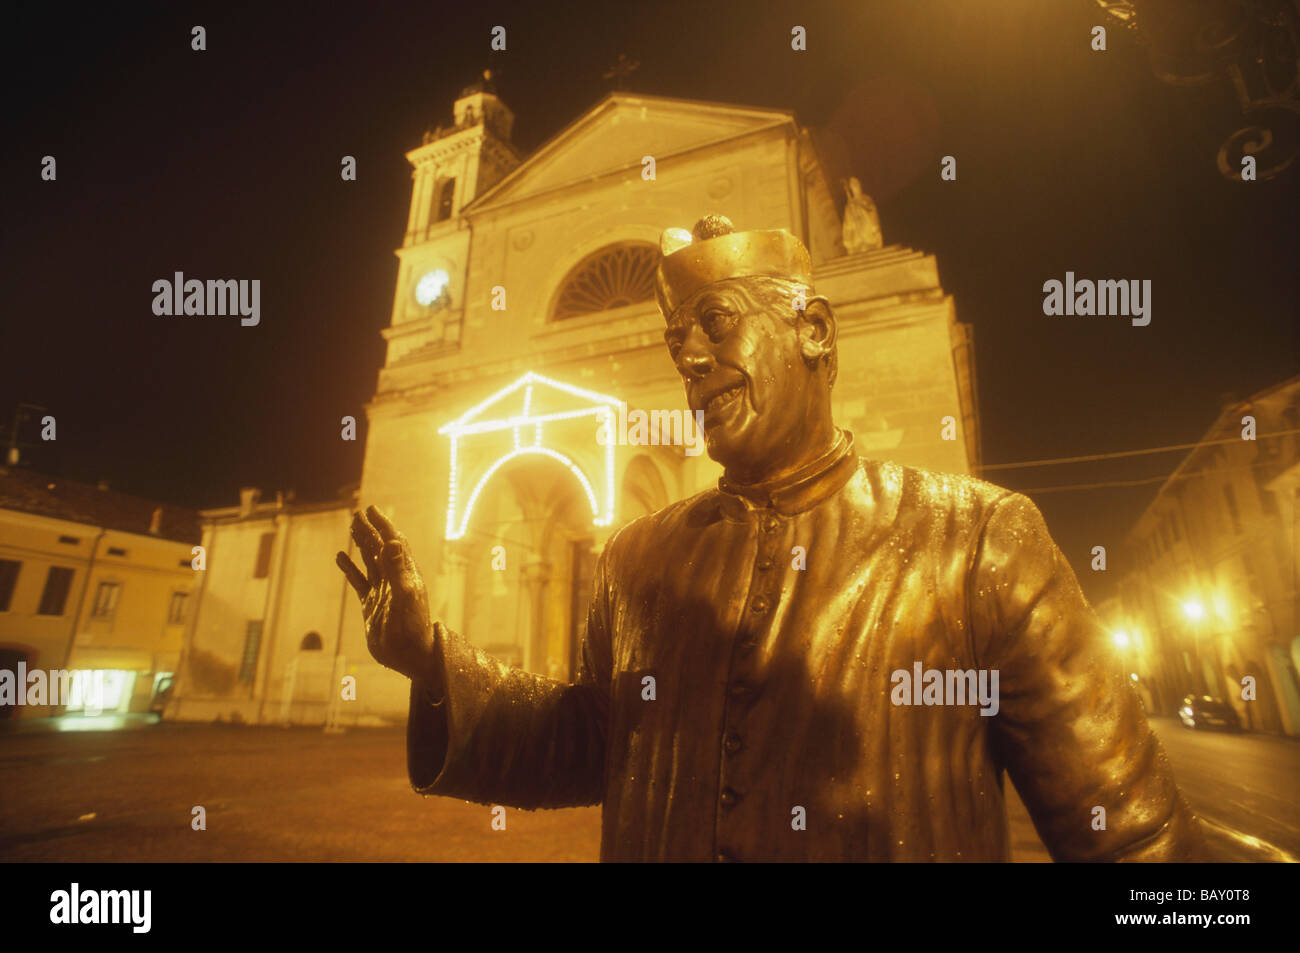 Don Camillo's statue in bronze in front of his church in Brescello, Parma province, Emilia Romagna, Italy Stock Photo